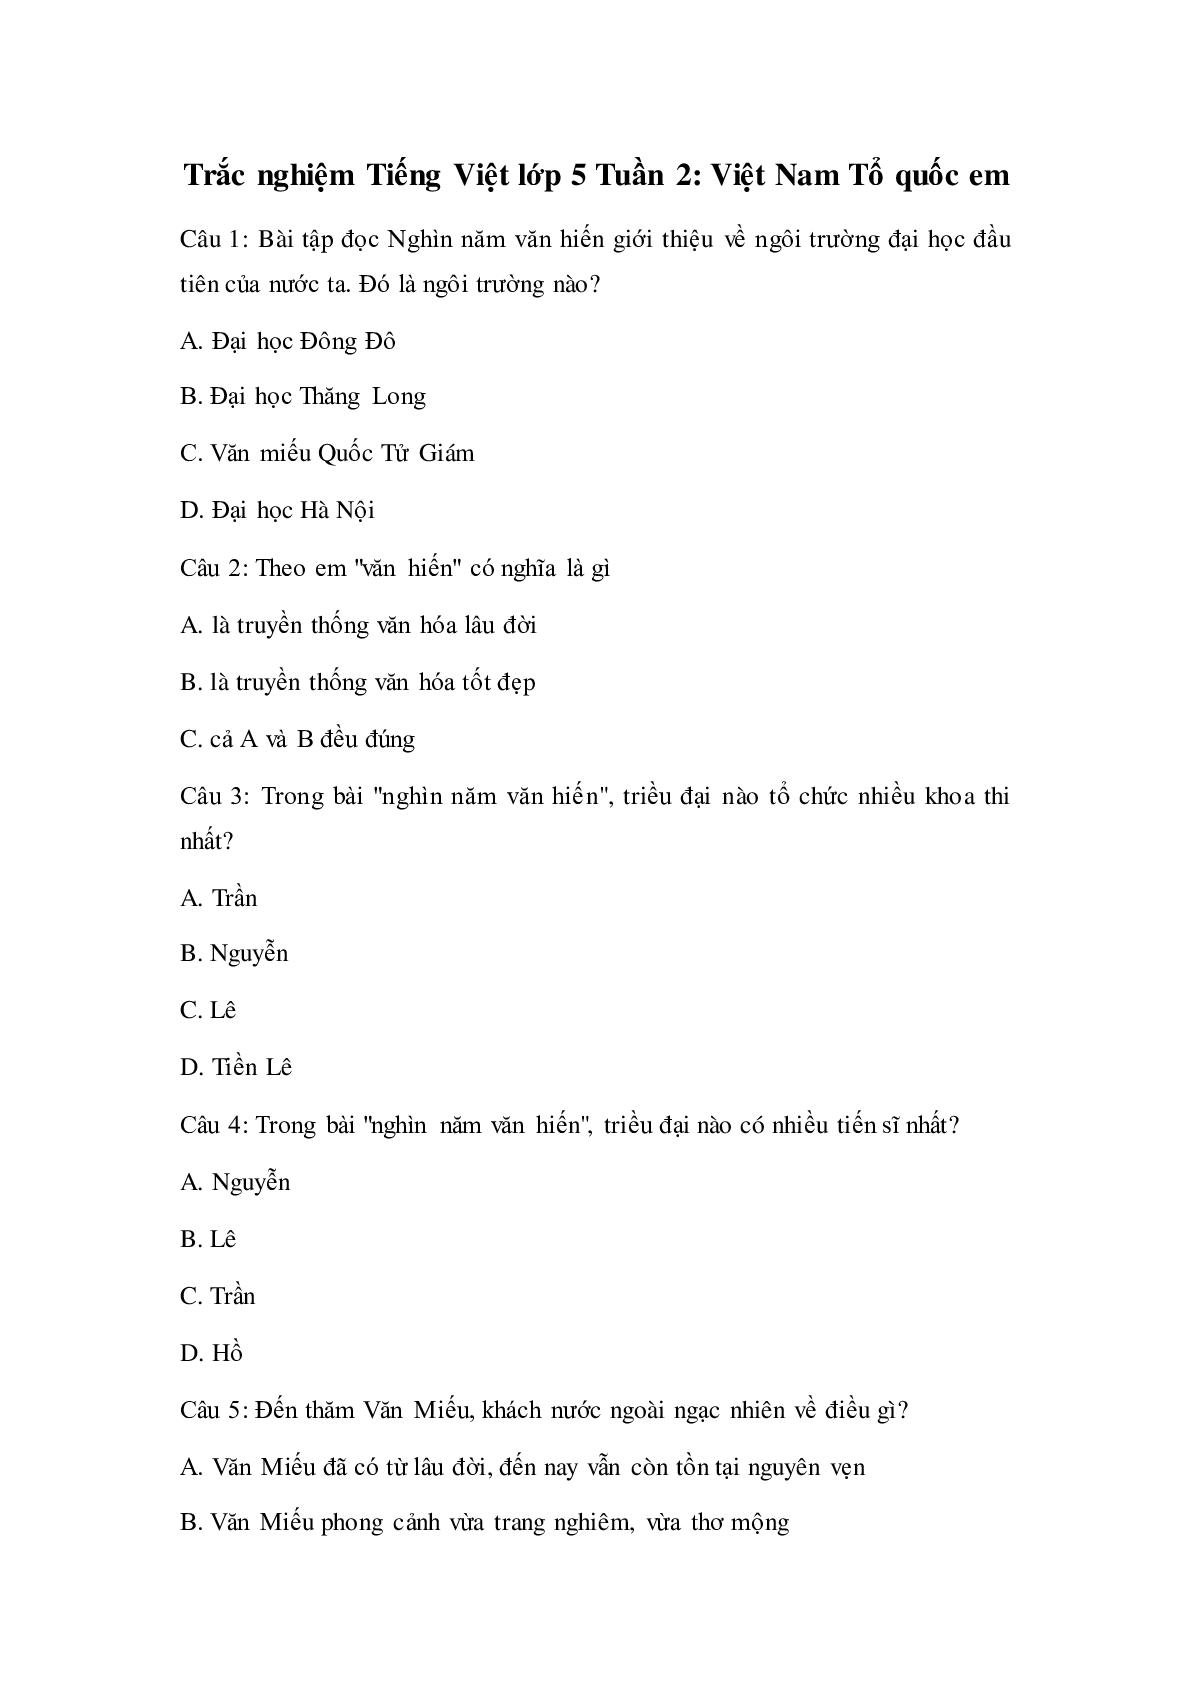 Trắc nghiệm Tiếng Việt lớp 5: Tuần 2 có đáp án (trang 1)